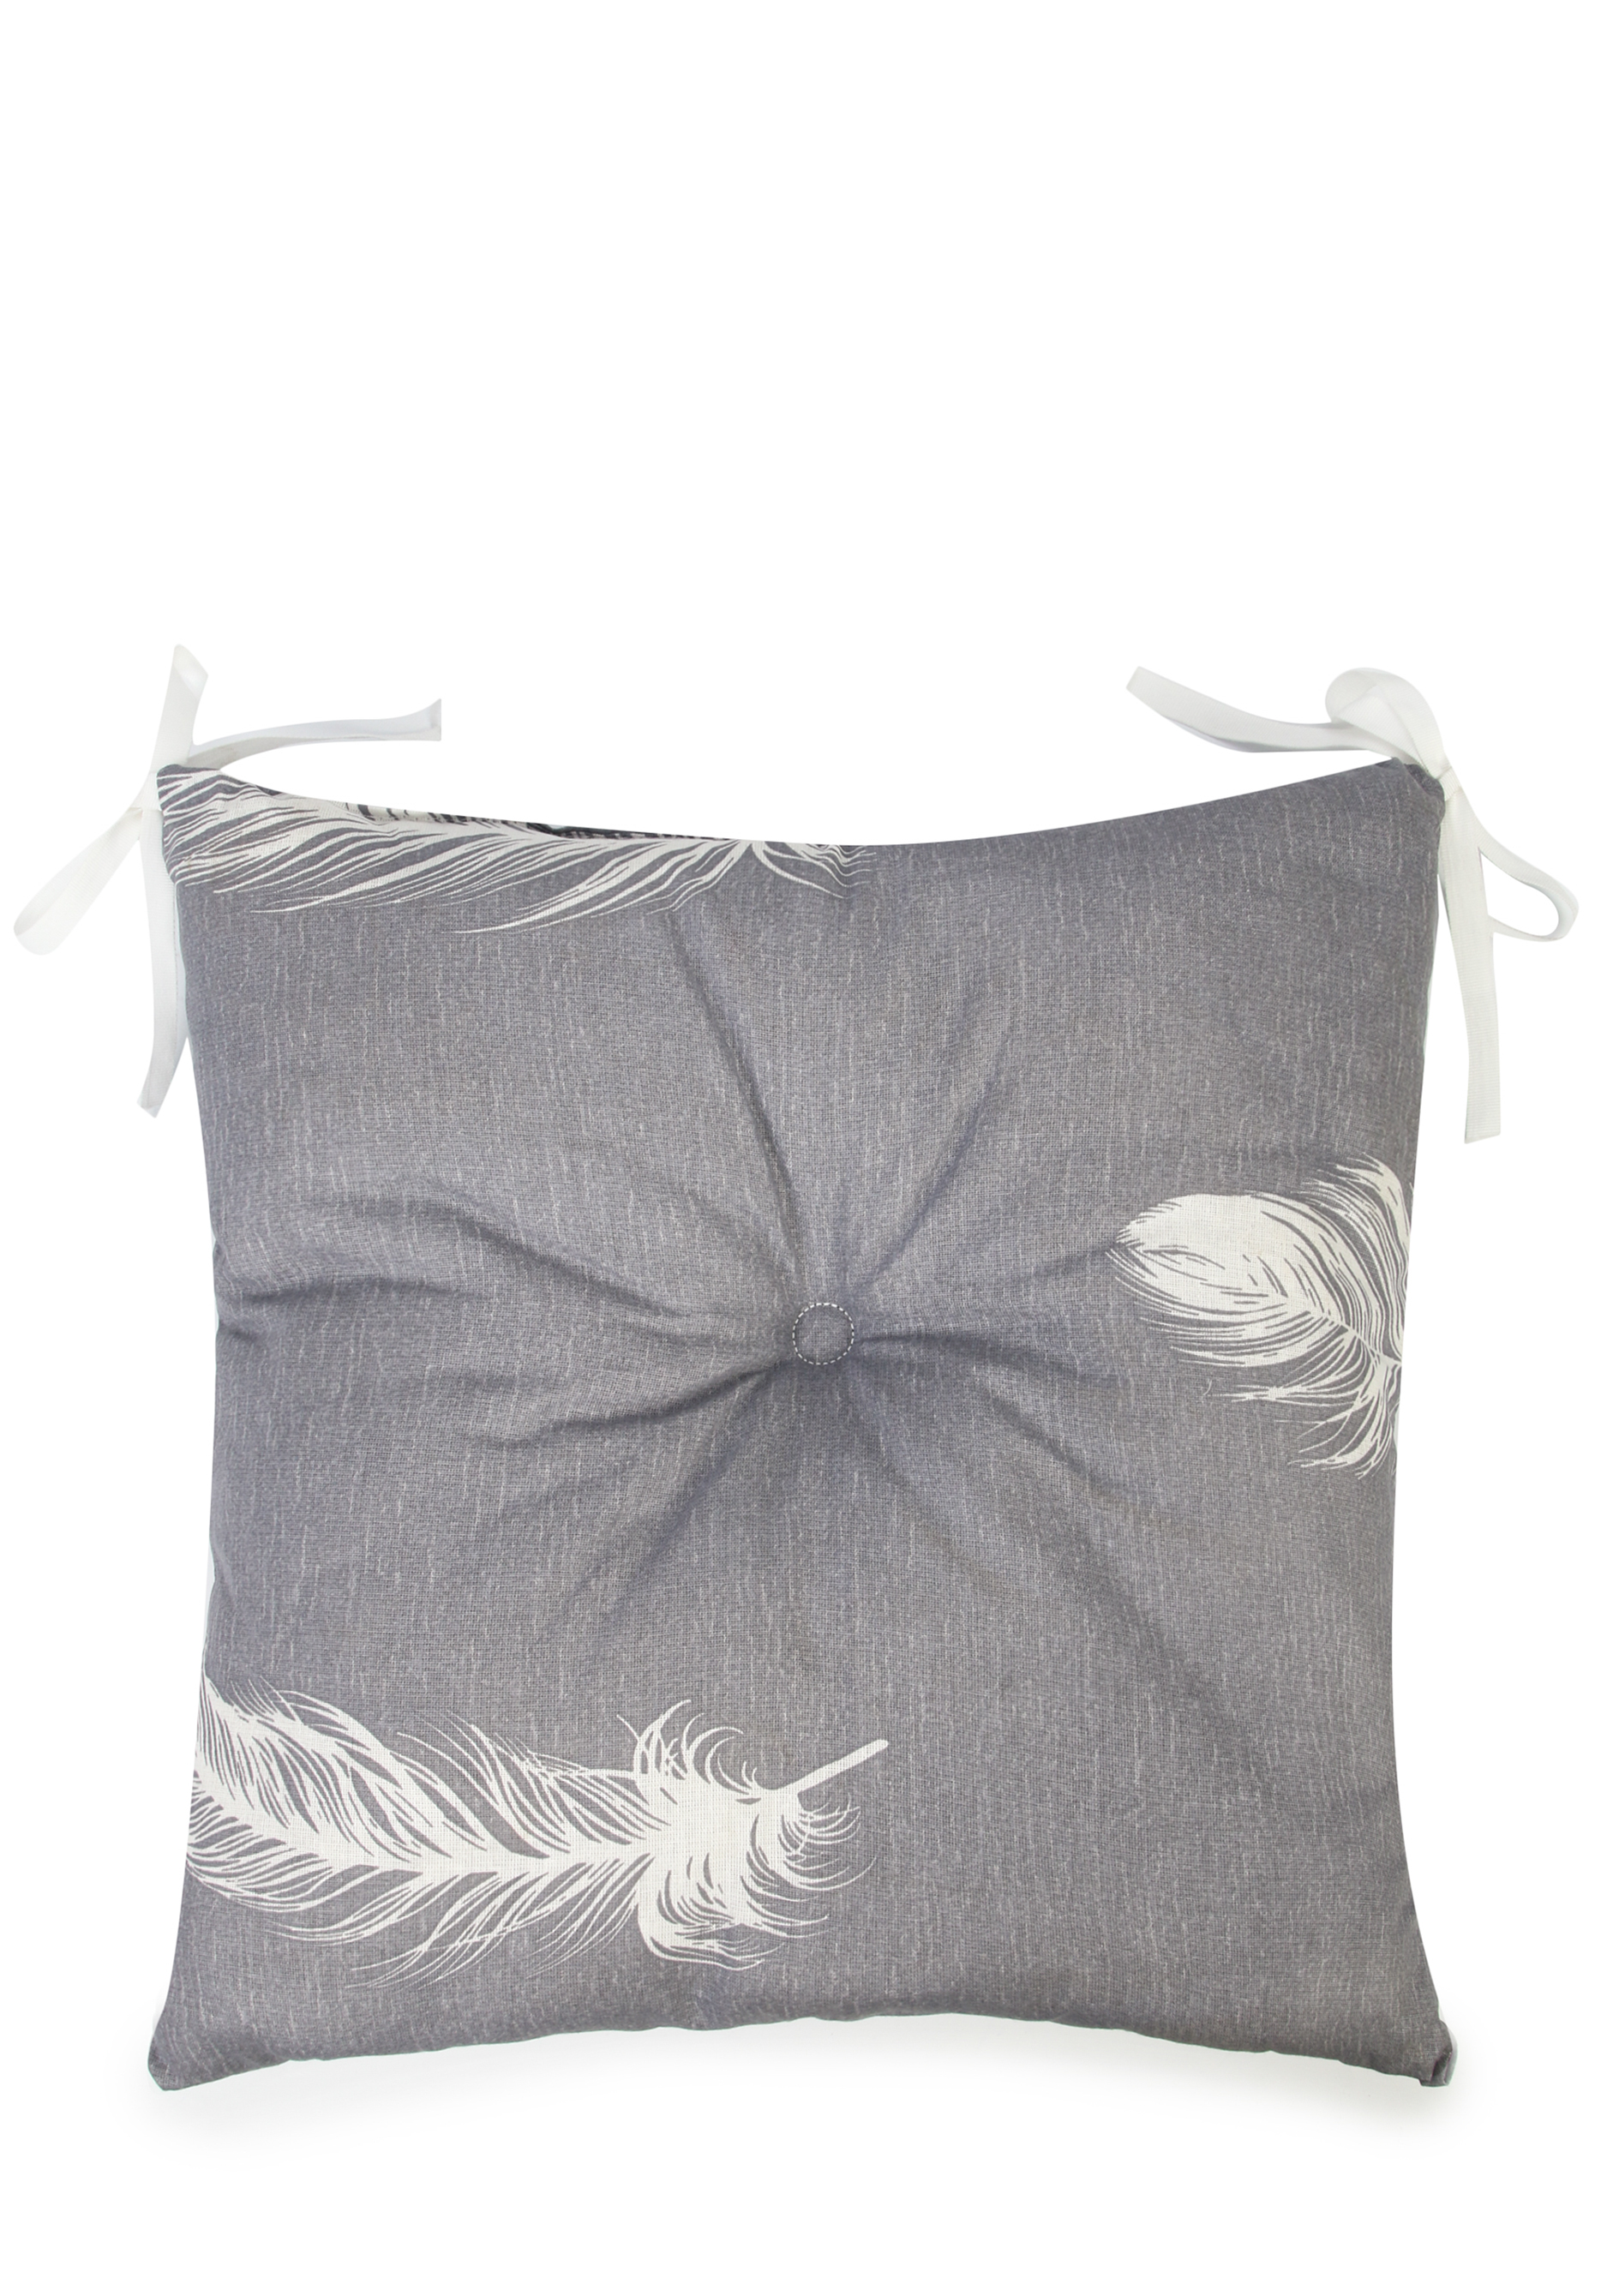 Сидушка для стула "Блаженство", цвет серый, размер 40*40 - фото 9